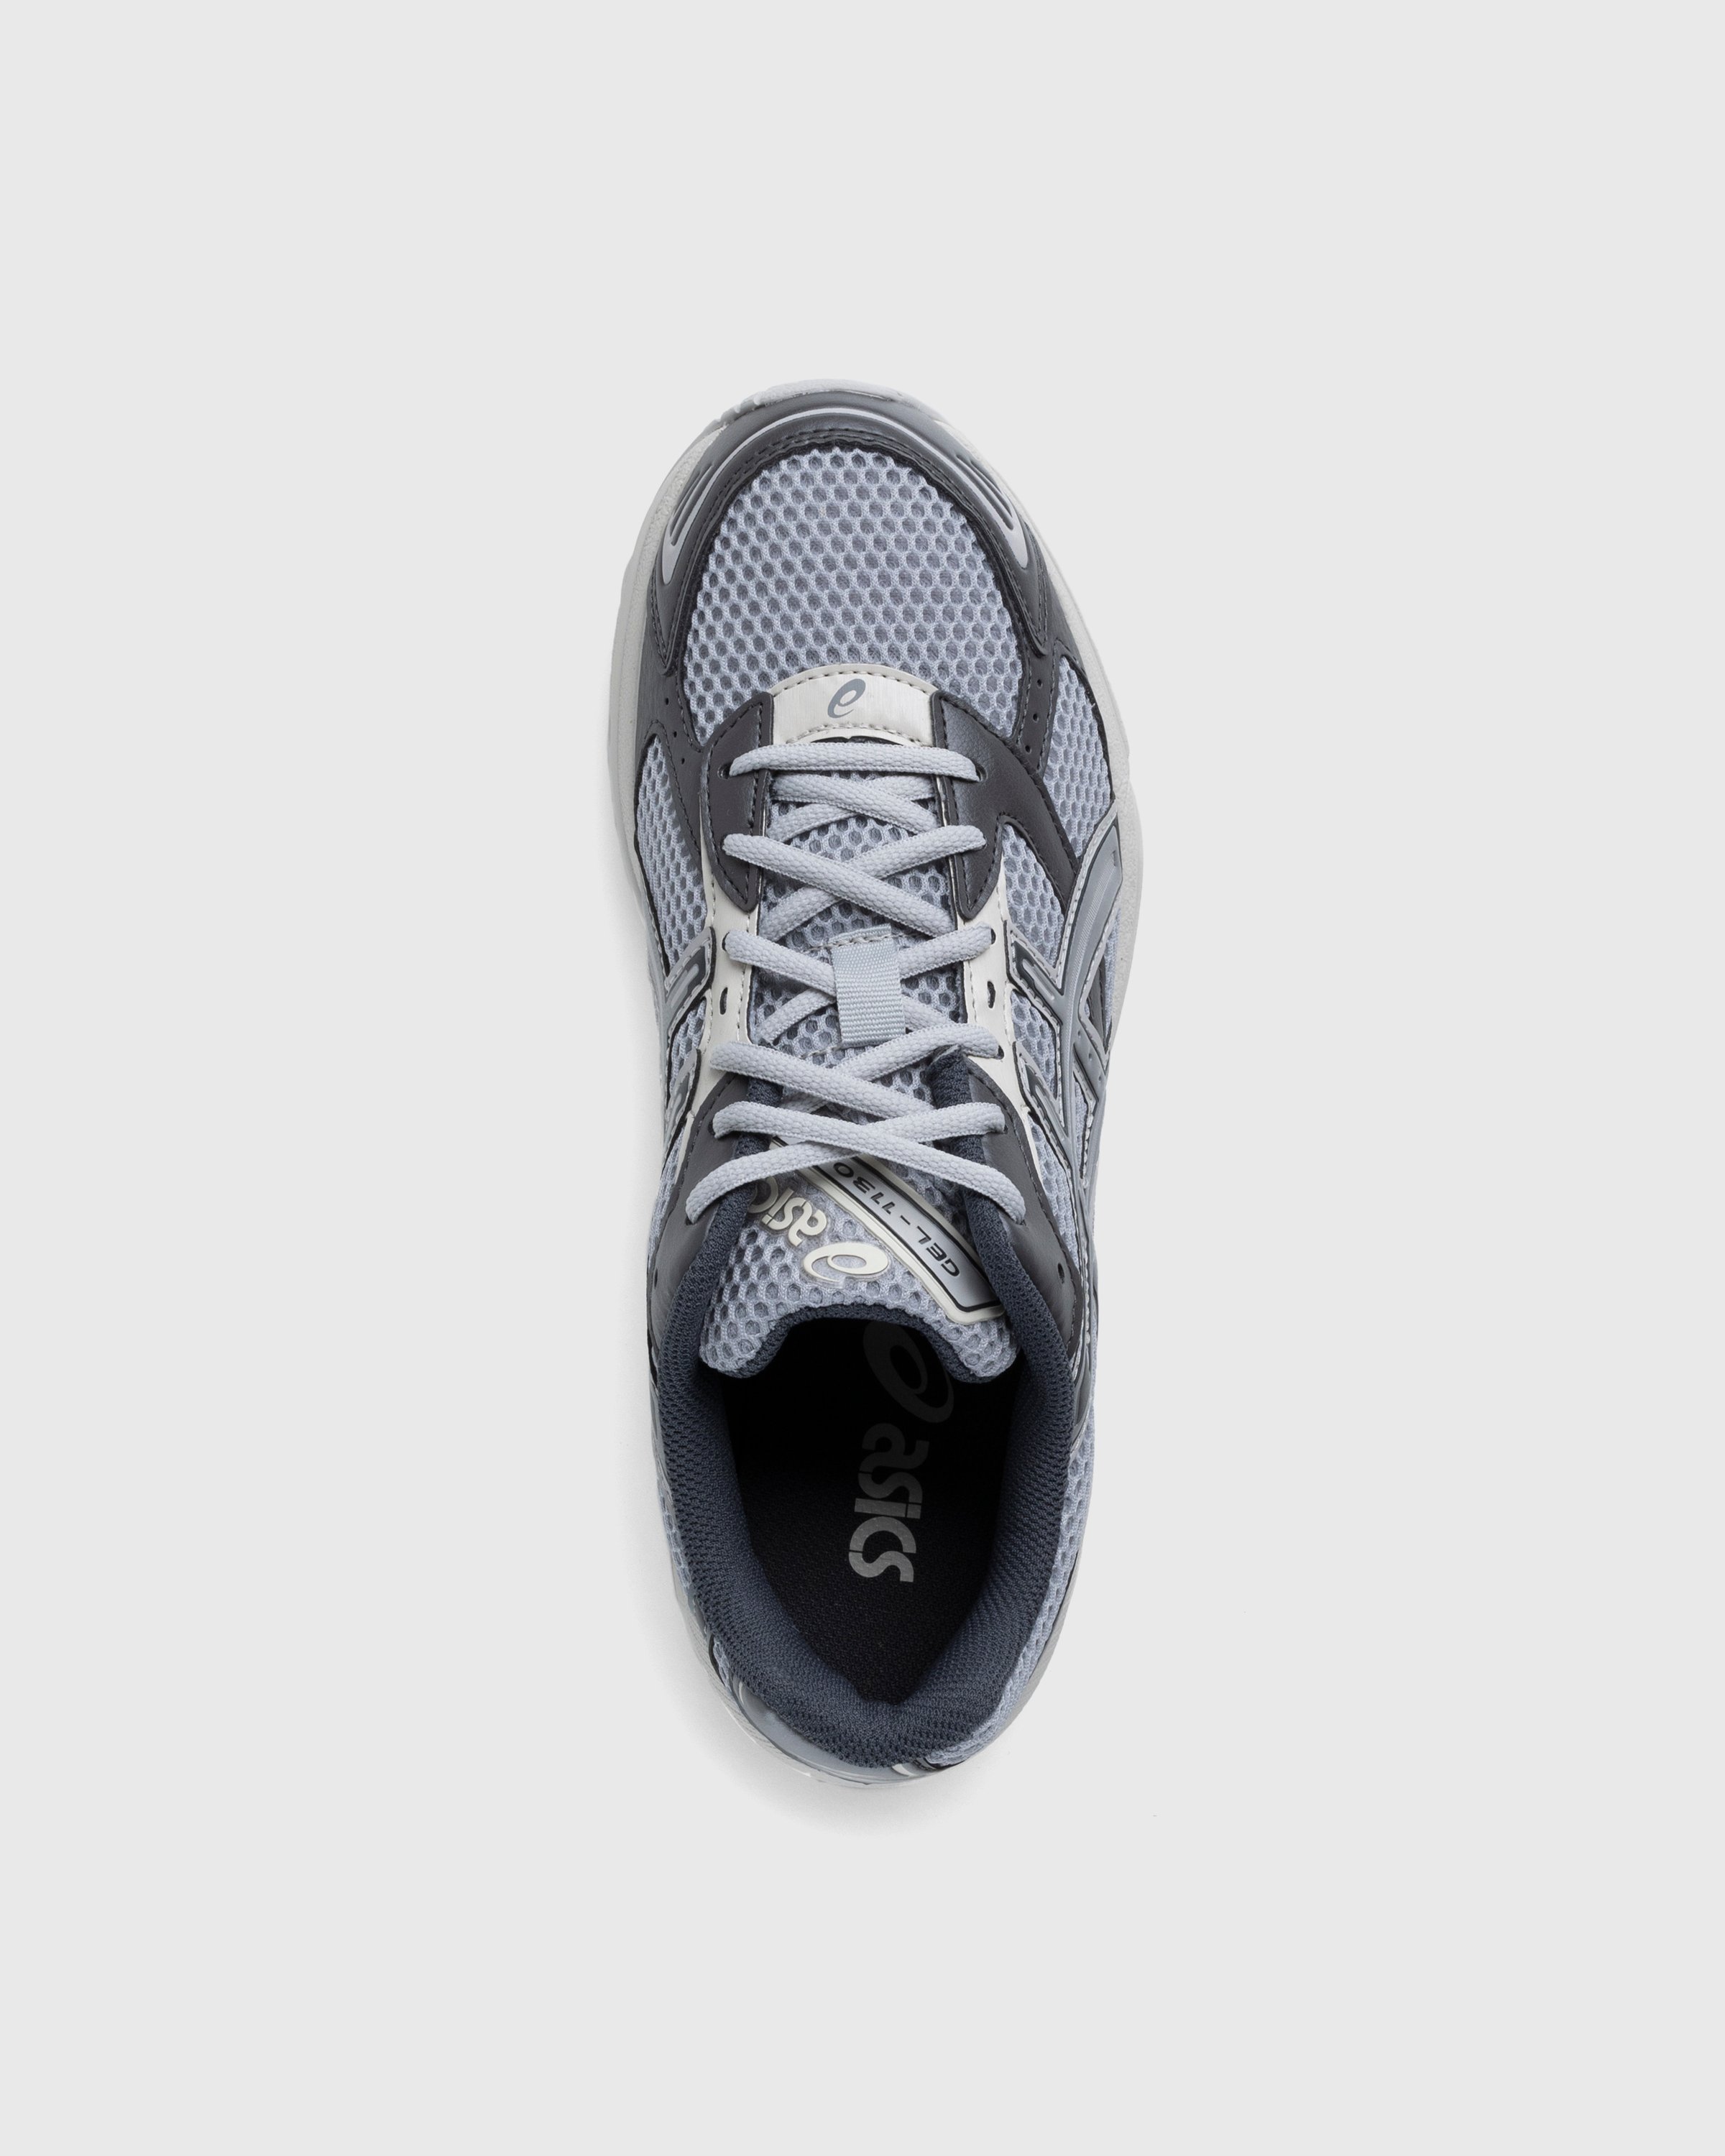 asics - Gel-1130 Oyster Grey/Clay Grey - Footwear - Grey - Image 4